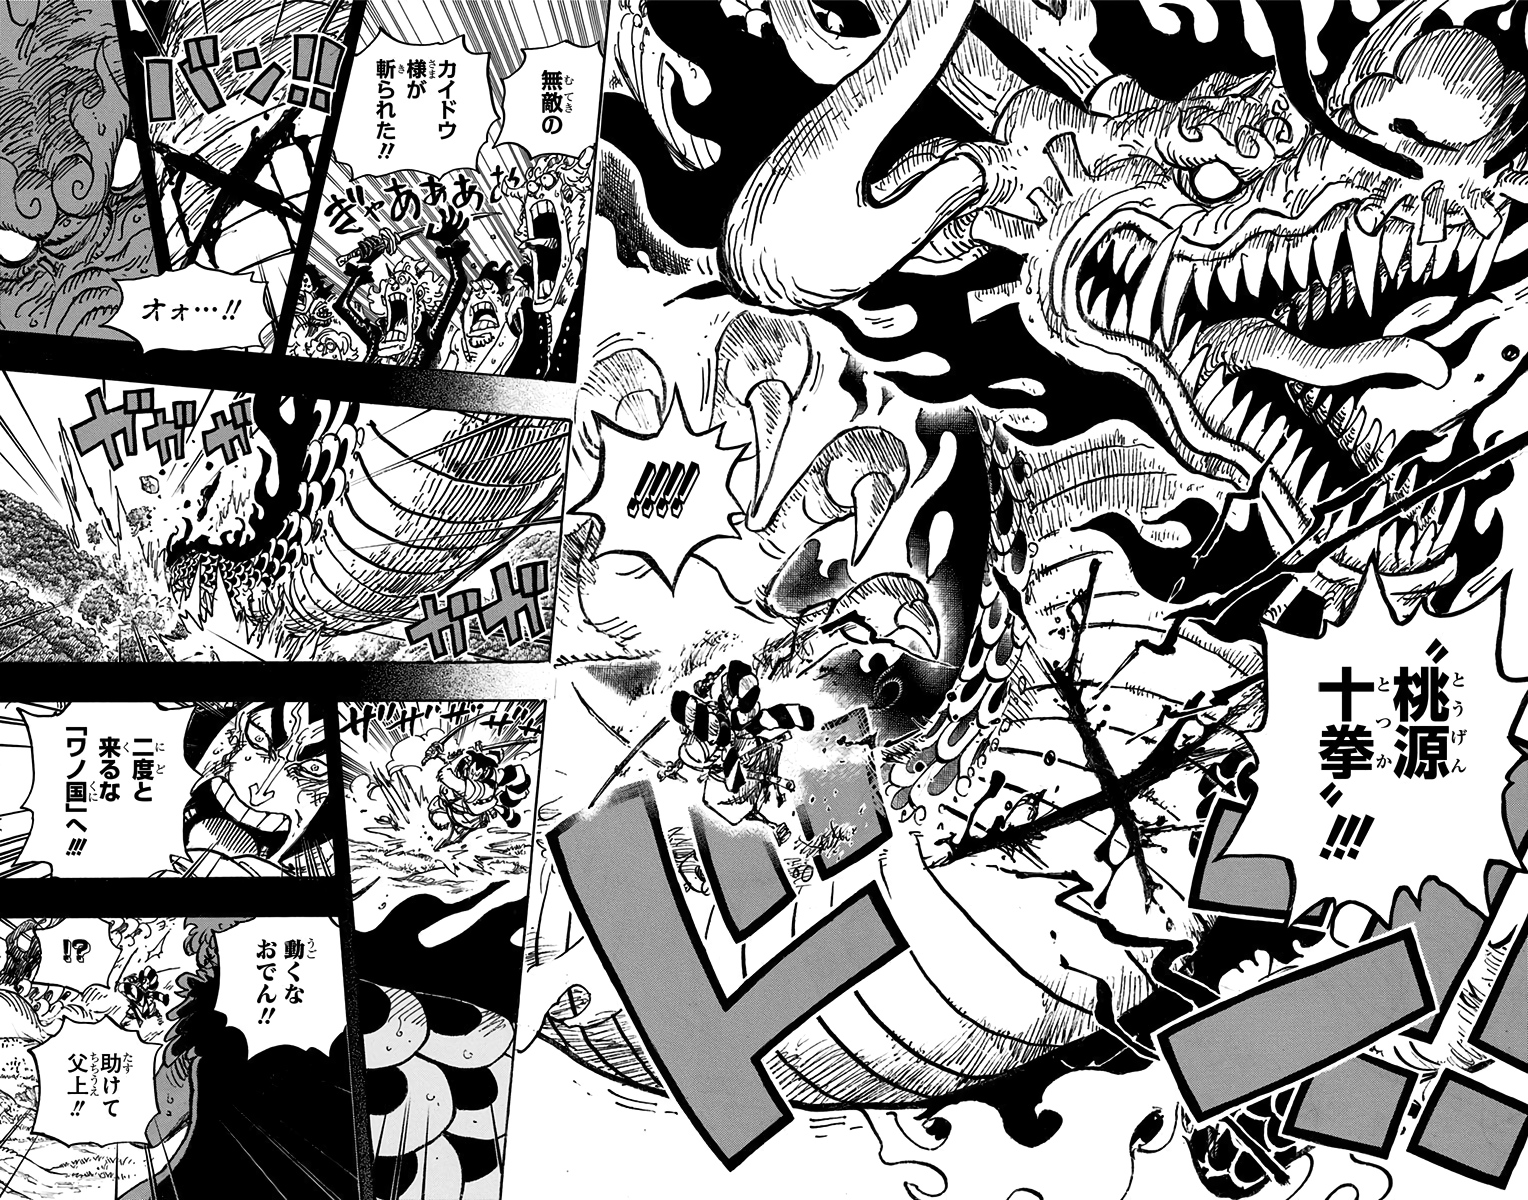 Spoiler One Piece Chapter 992 Spoiler Summaries And Images Worstgen